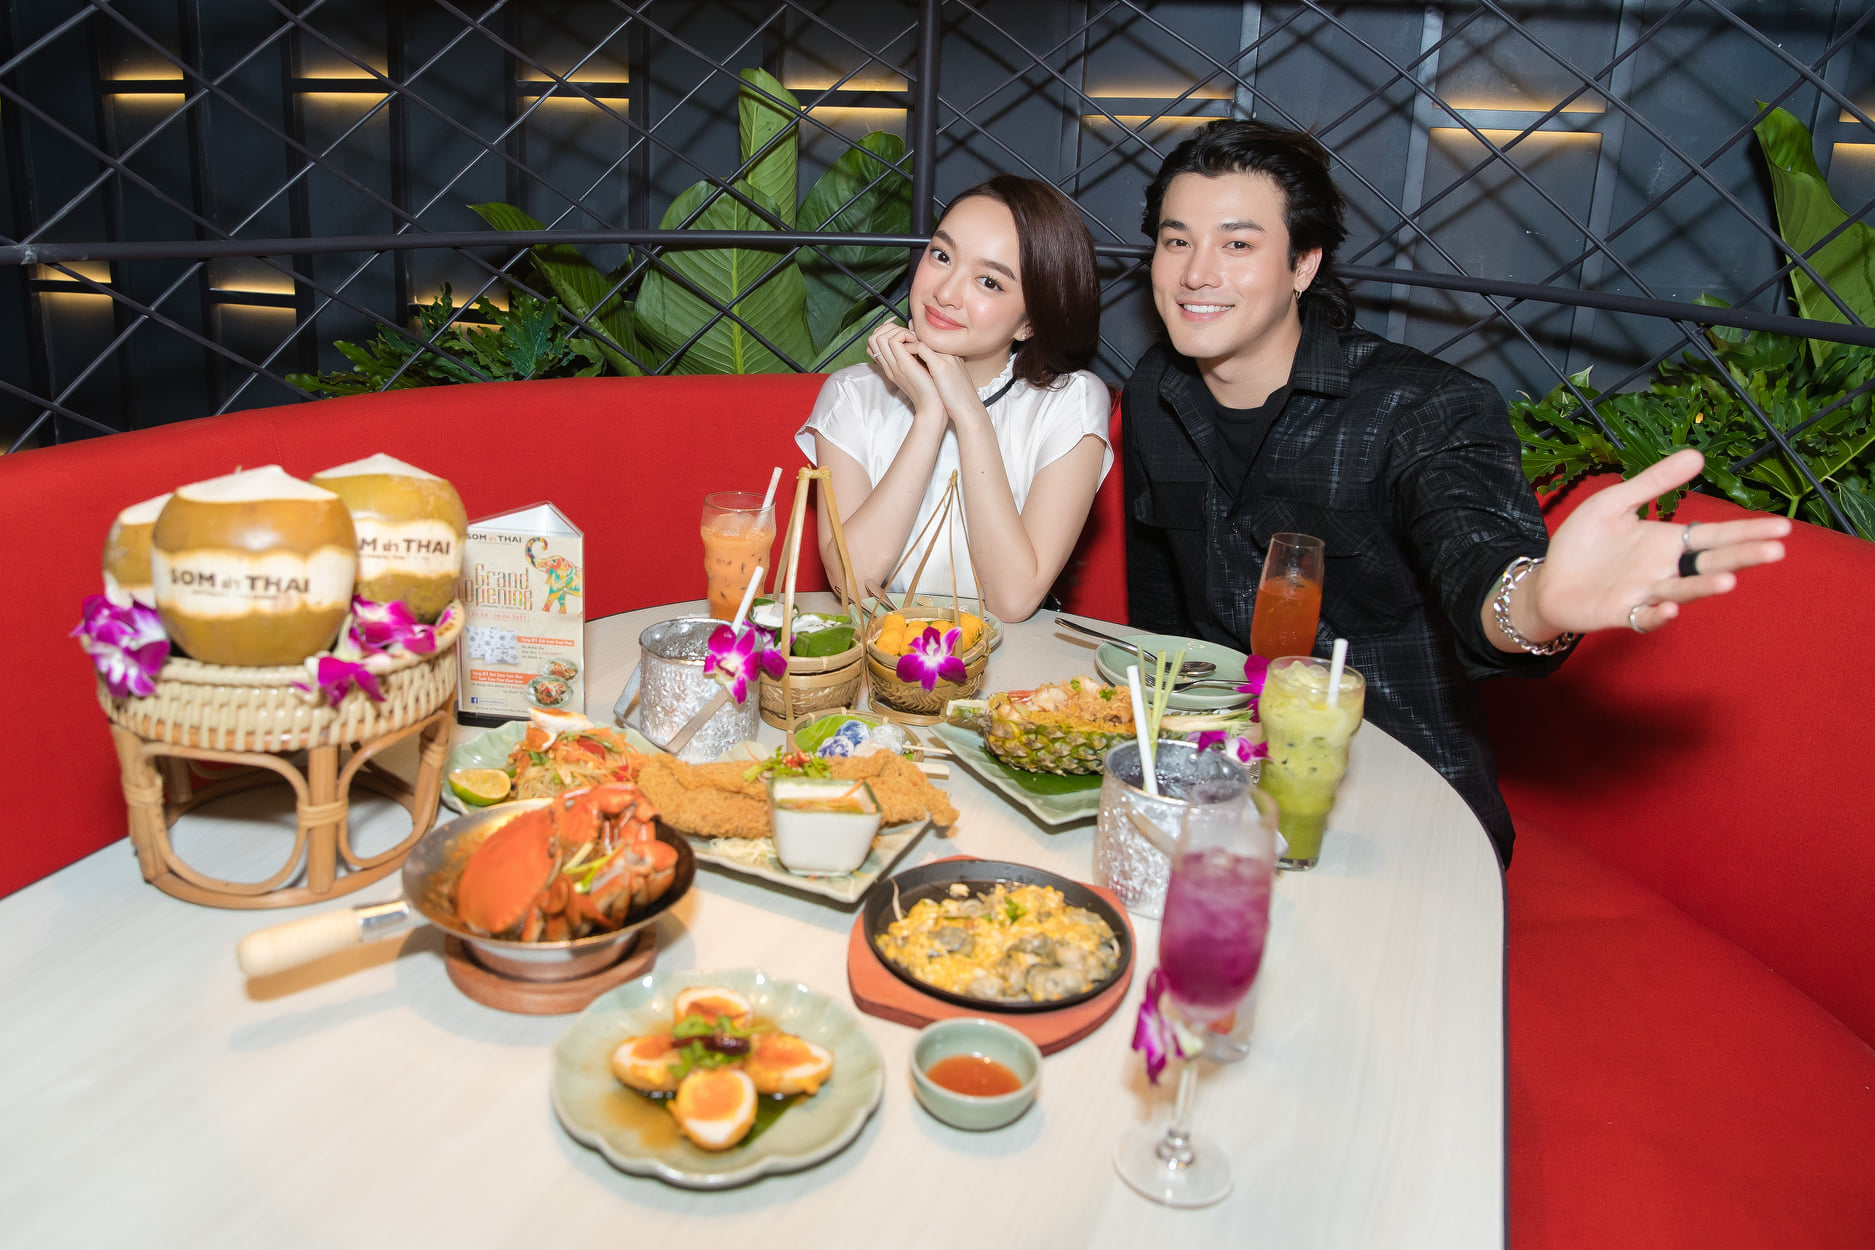  Kaity Nguyễn và Khương Lê hẹn hò “bí mật” tại nhà hàng Som ตำ Thai